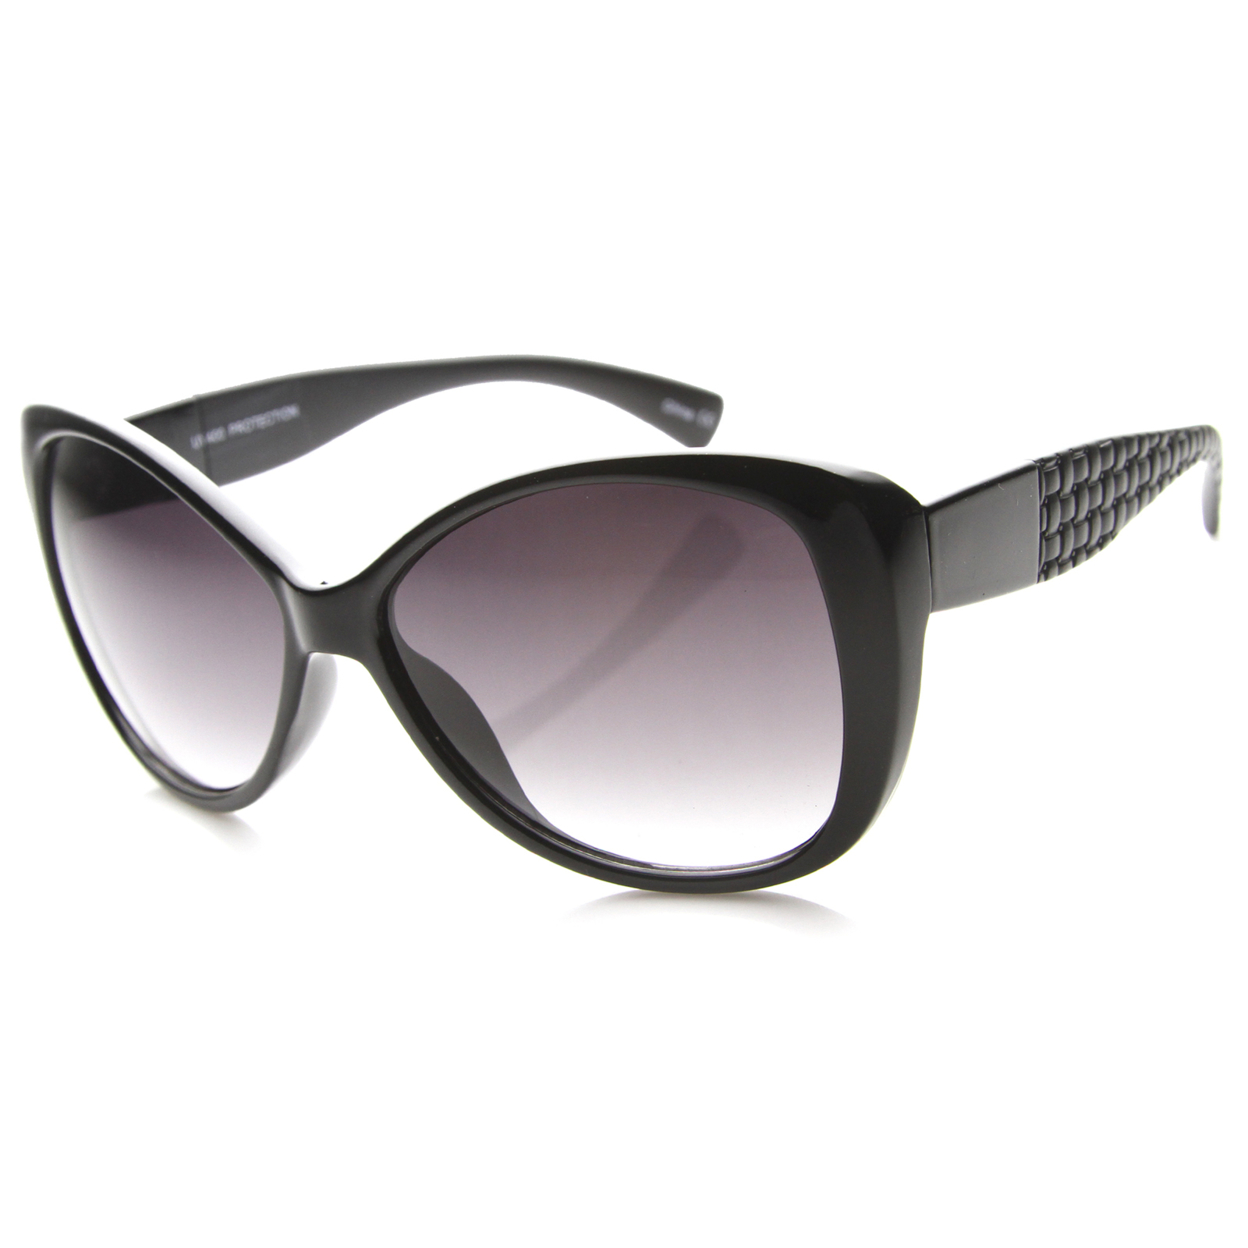 Womens Cat Eye Sunglasses With UV400 Protected Gradient Lens 9940 - Tortoise-Tortoise / Lavender